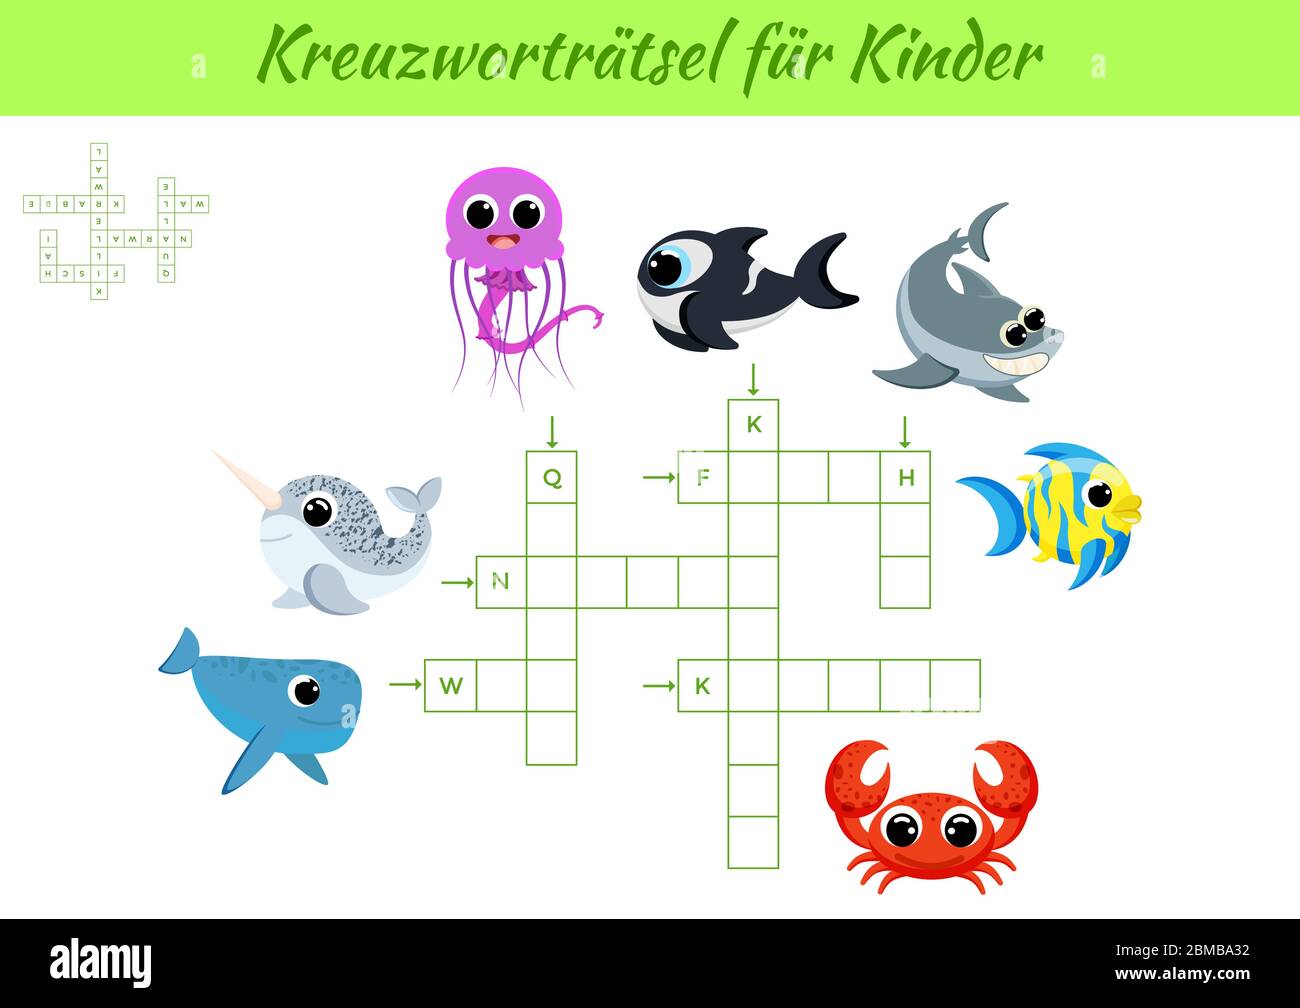 Kreuzworträtsel für Kinder - Crossword for kids. Kids activity worksheet colorful printable version. Educational game for study German words. Stock Vector